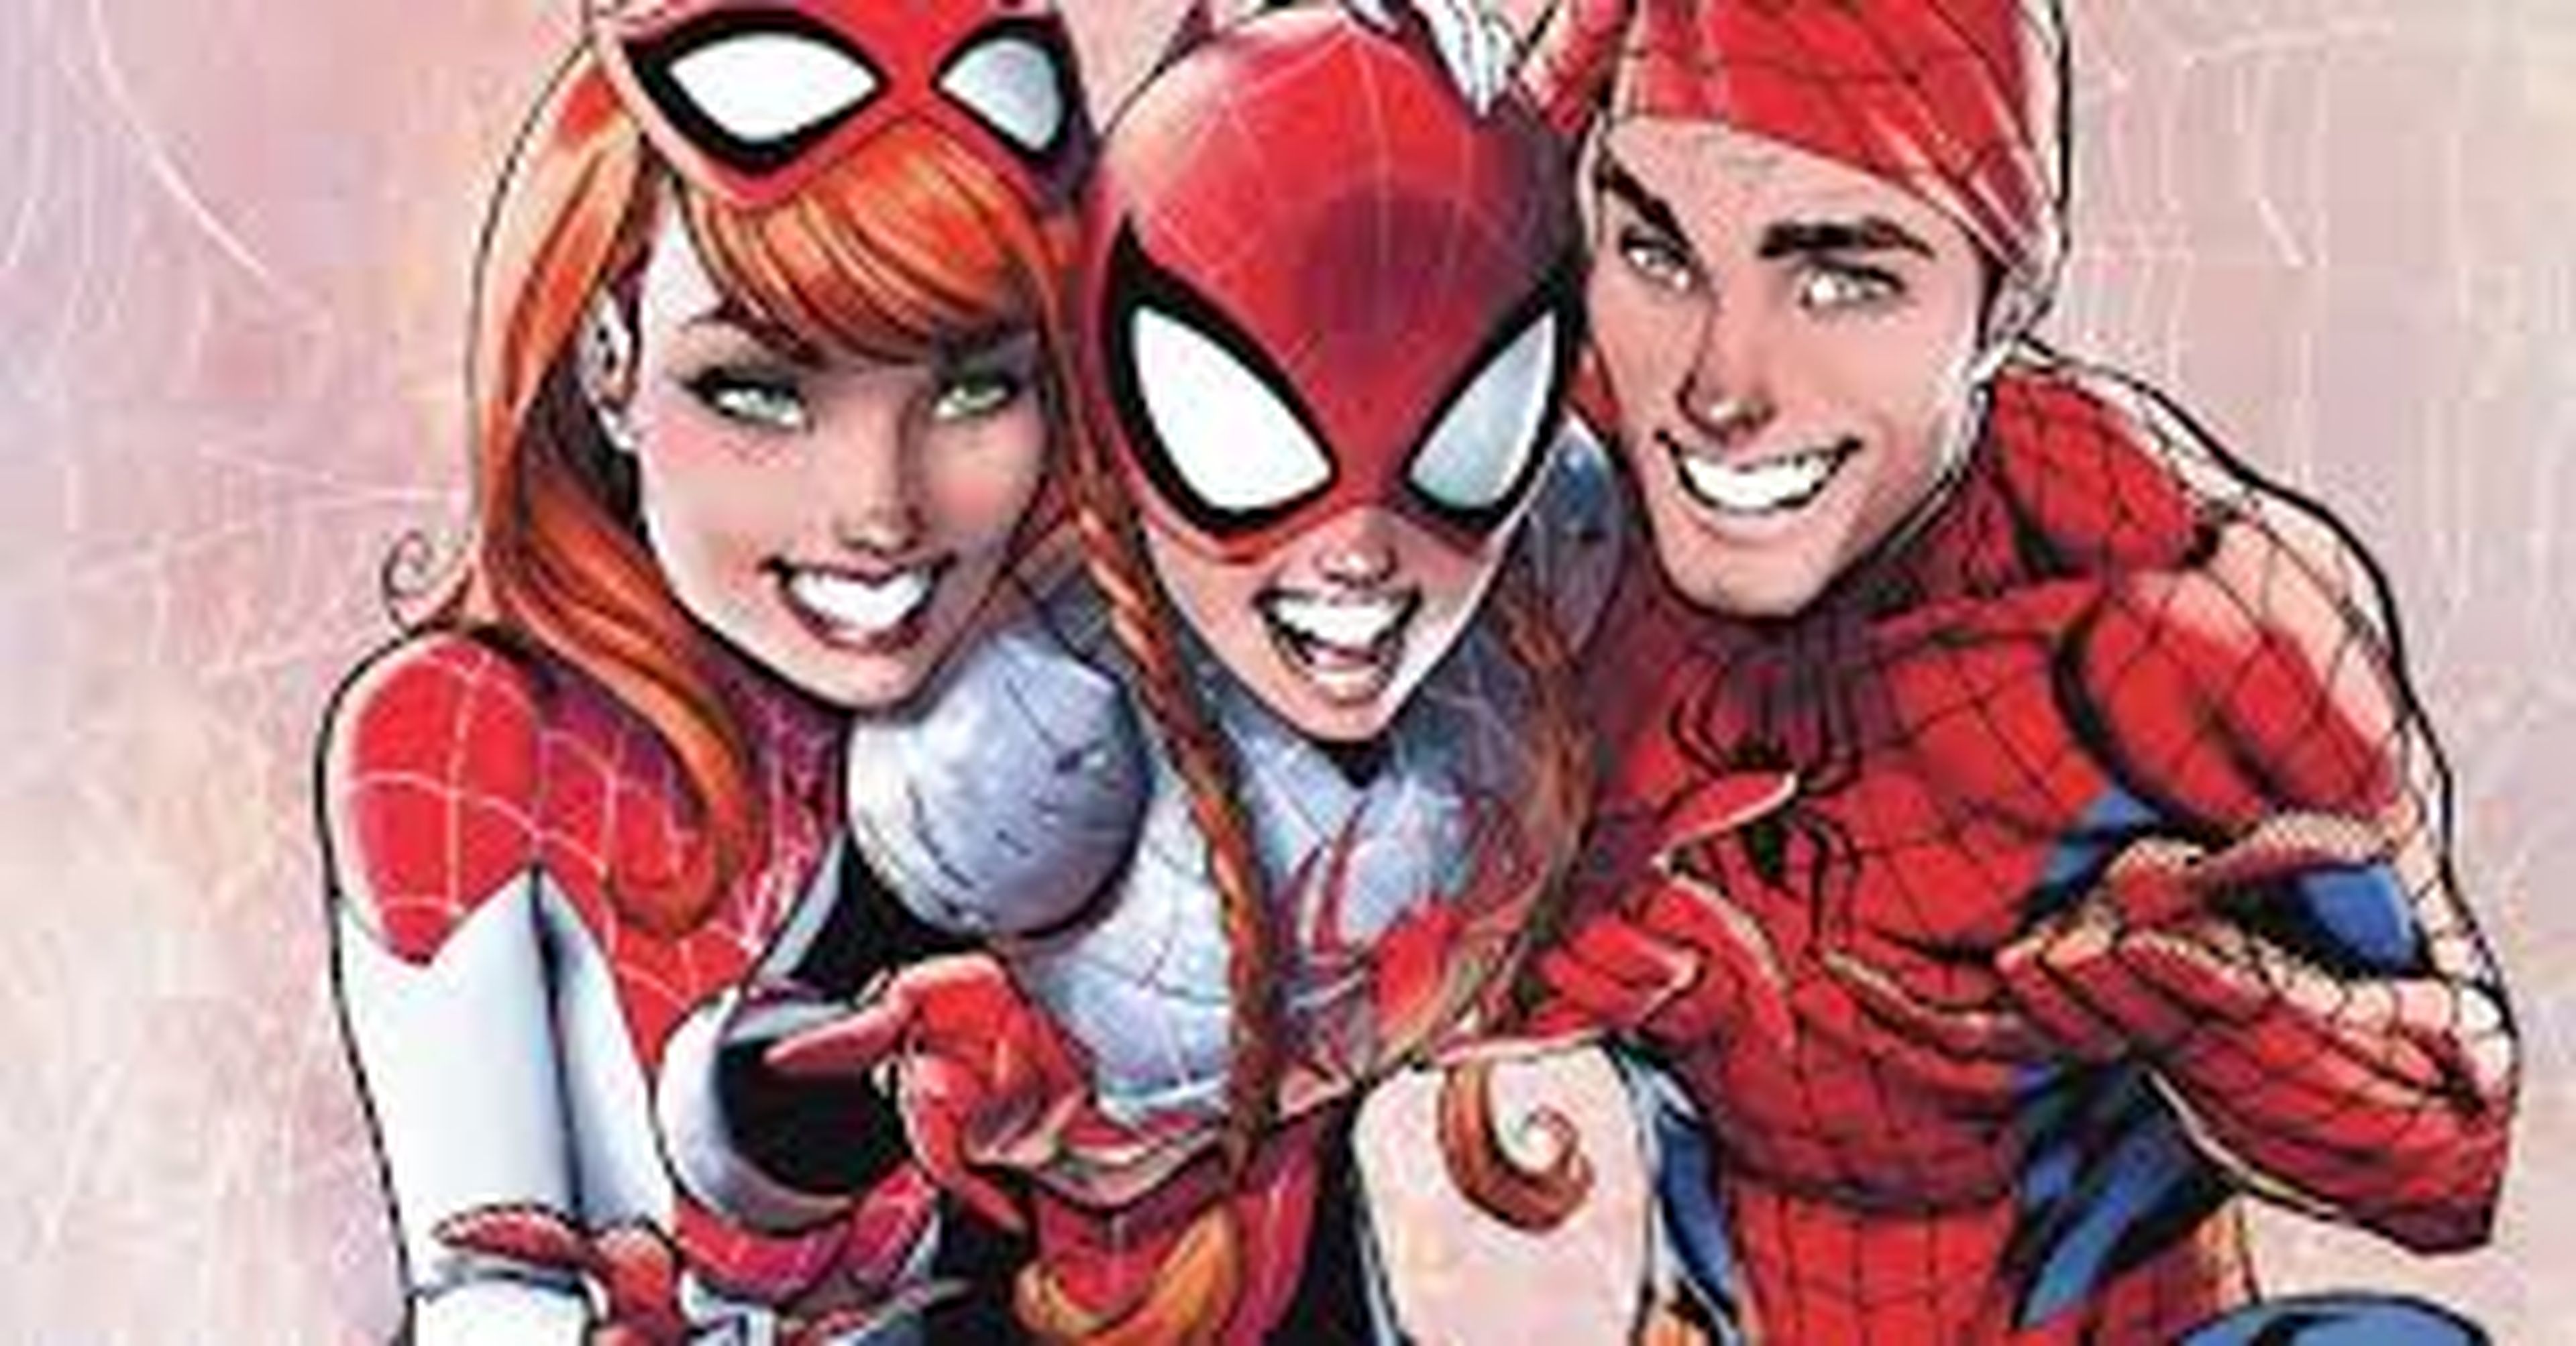 El Asombroso Spider-man: Renueva tus votos